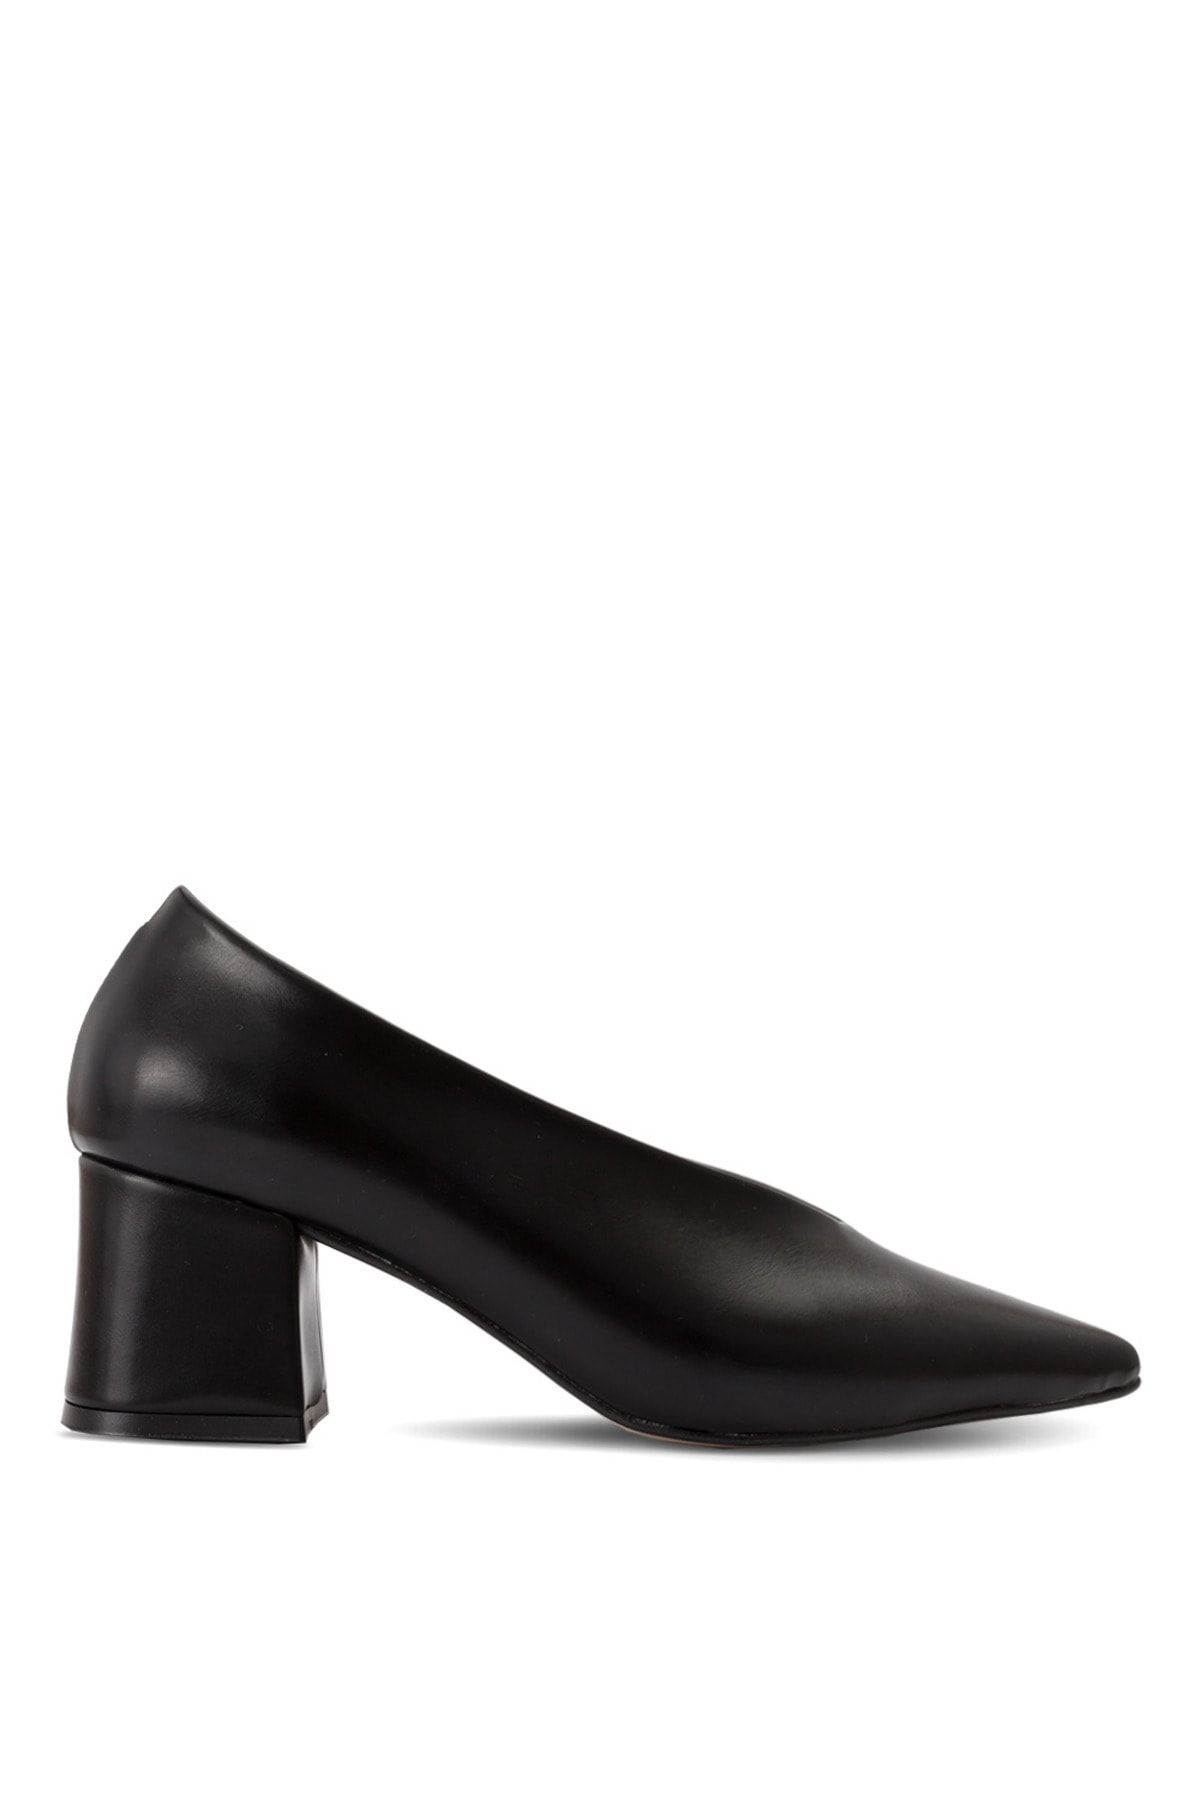 Sole Sisters Topuklu Ayakkabı Siyah - Classıca